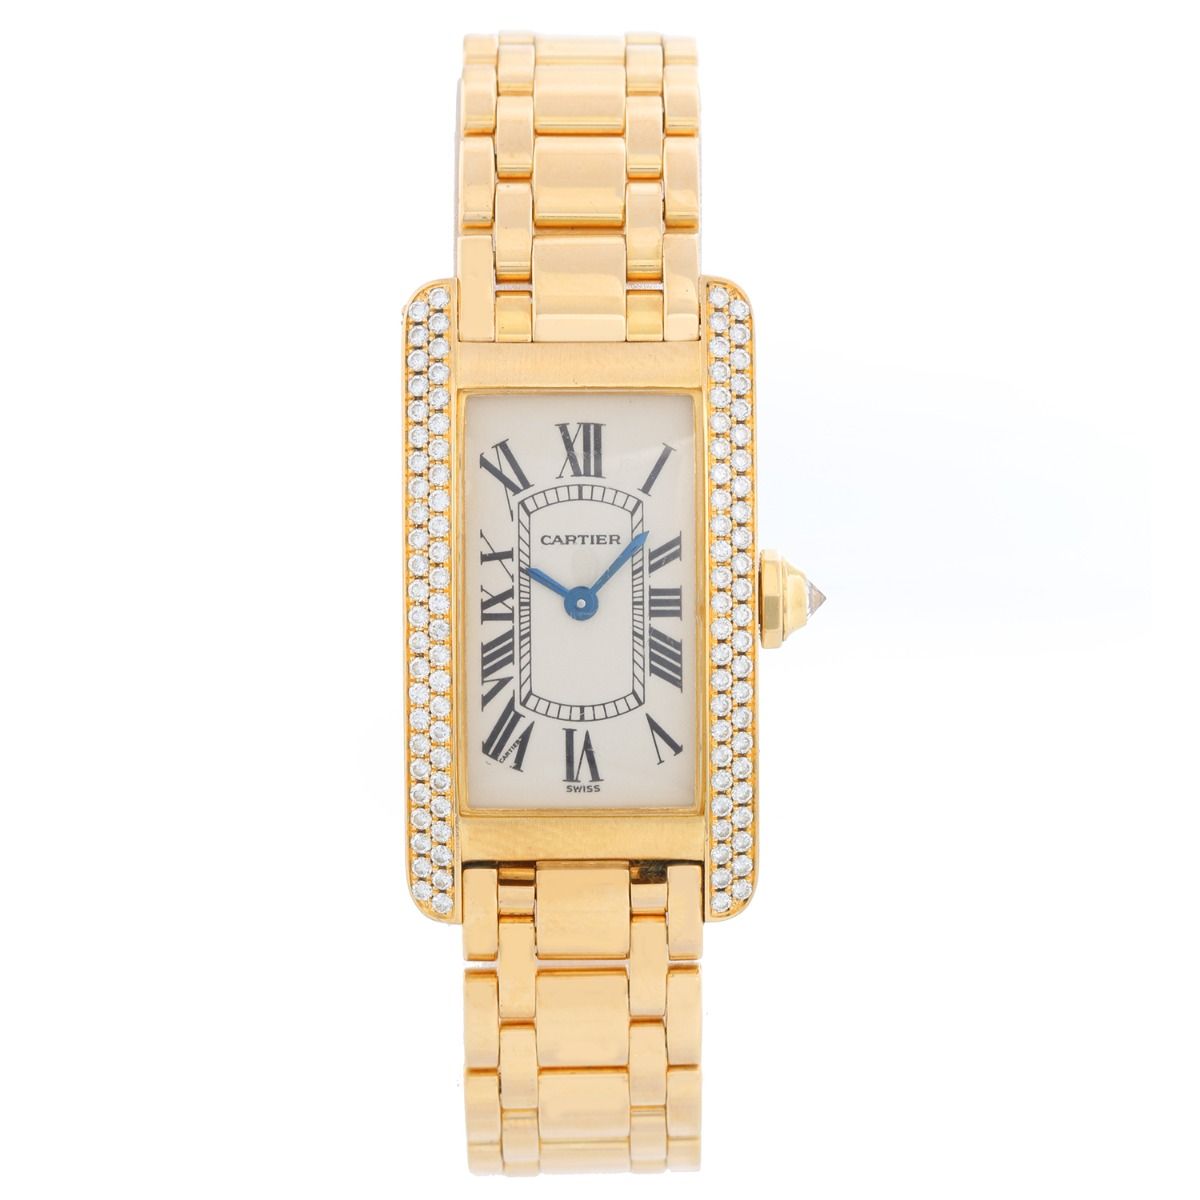 18k gold cartier watch